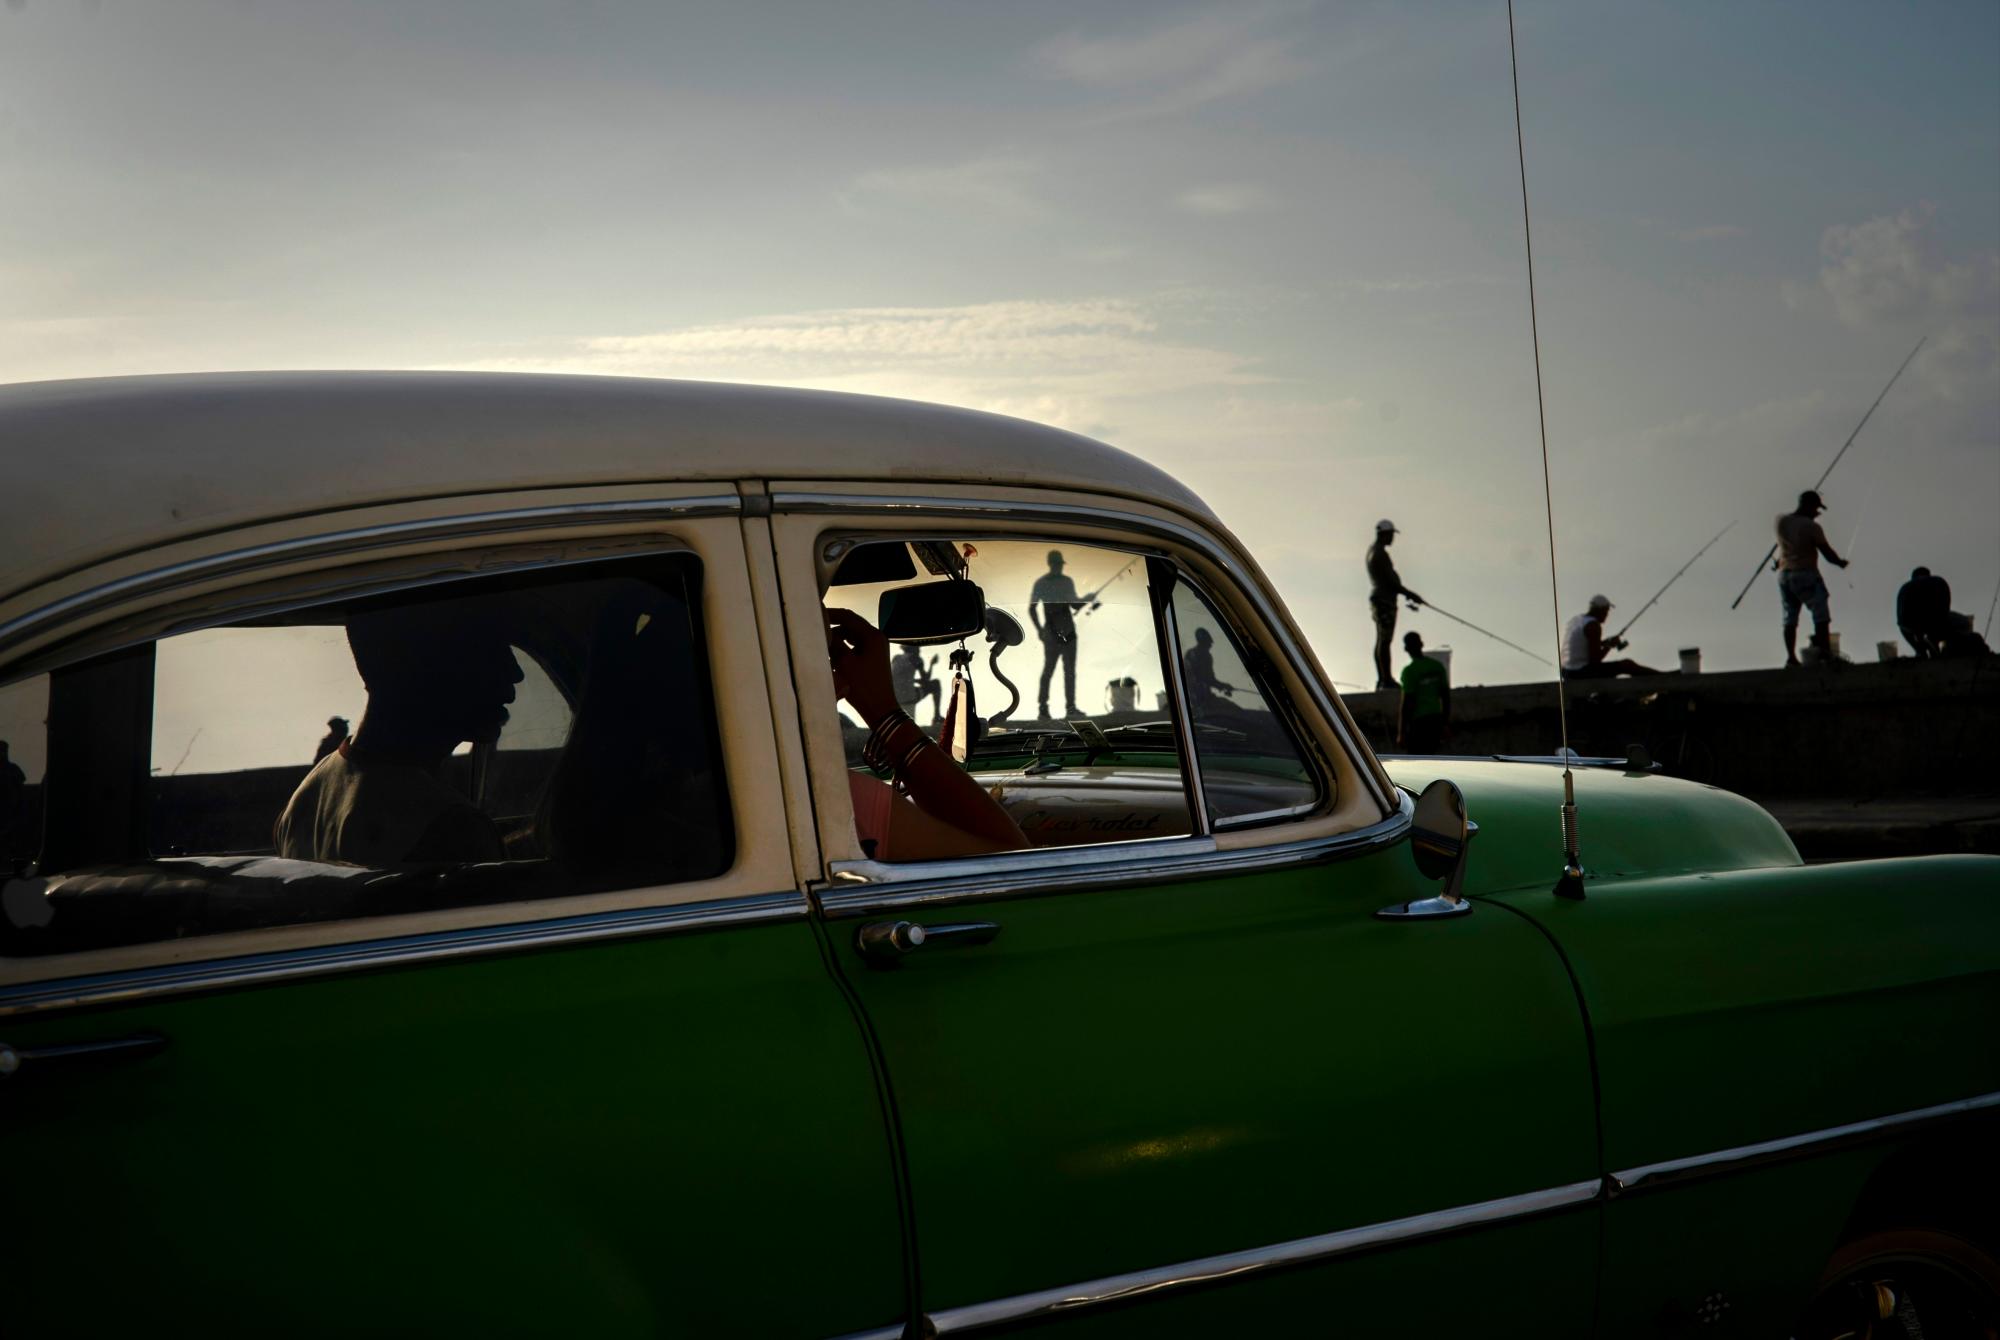 Una pareja en un automóvil estadounidense clásico pasa junto a los pescadores a lo largo del malecón al atardecer en La Habana, Cuba, el 19 de junio de 2019. 